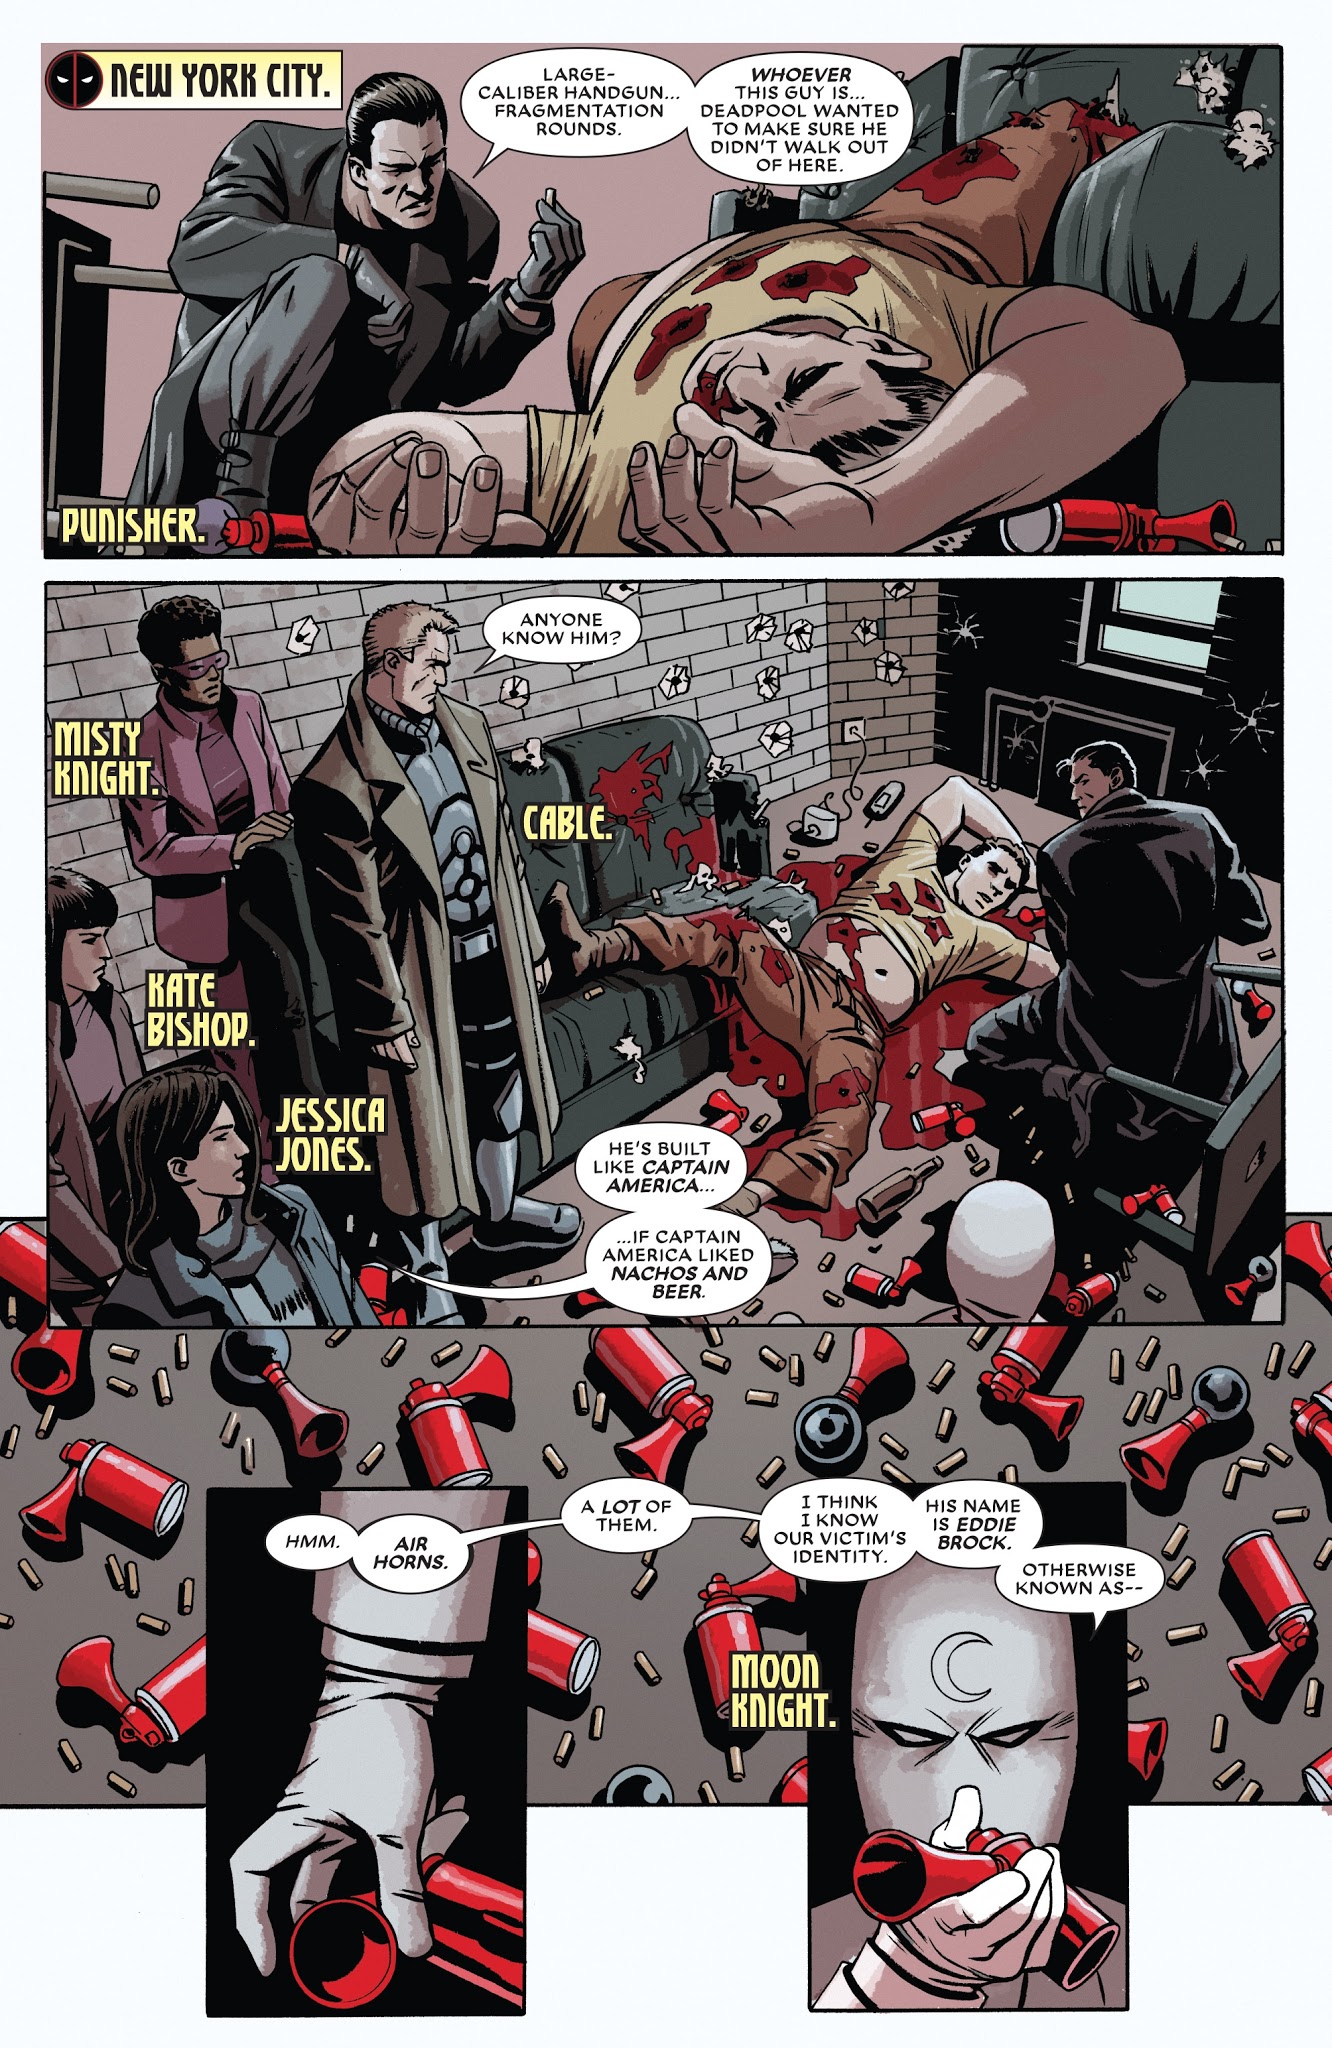 Deadpool Kills The Marvel Universe Again Issue 2 Read